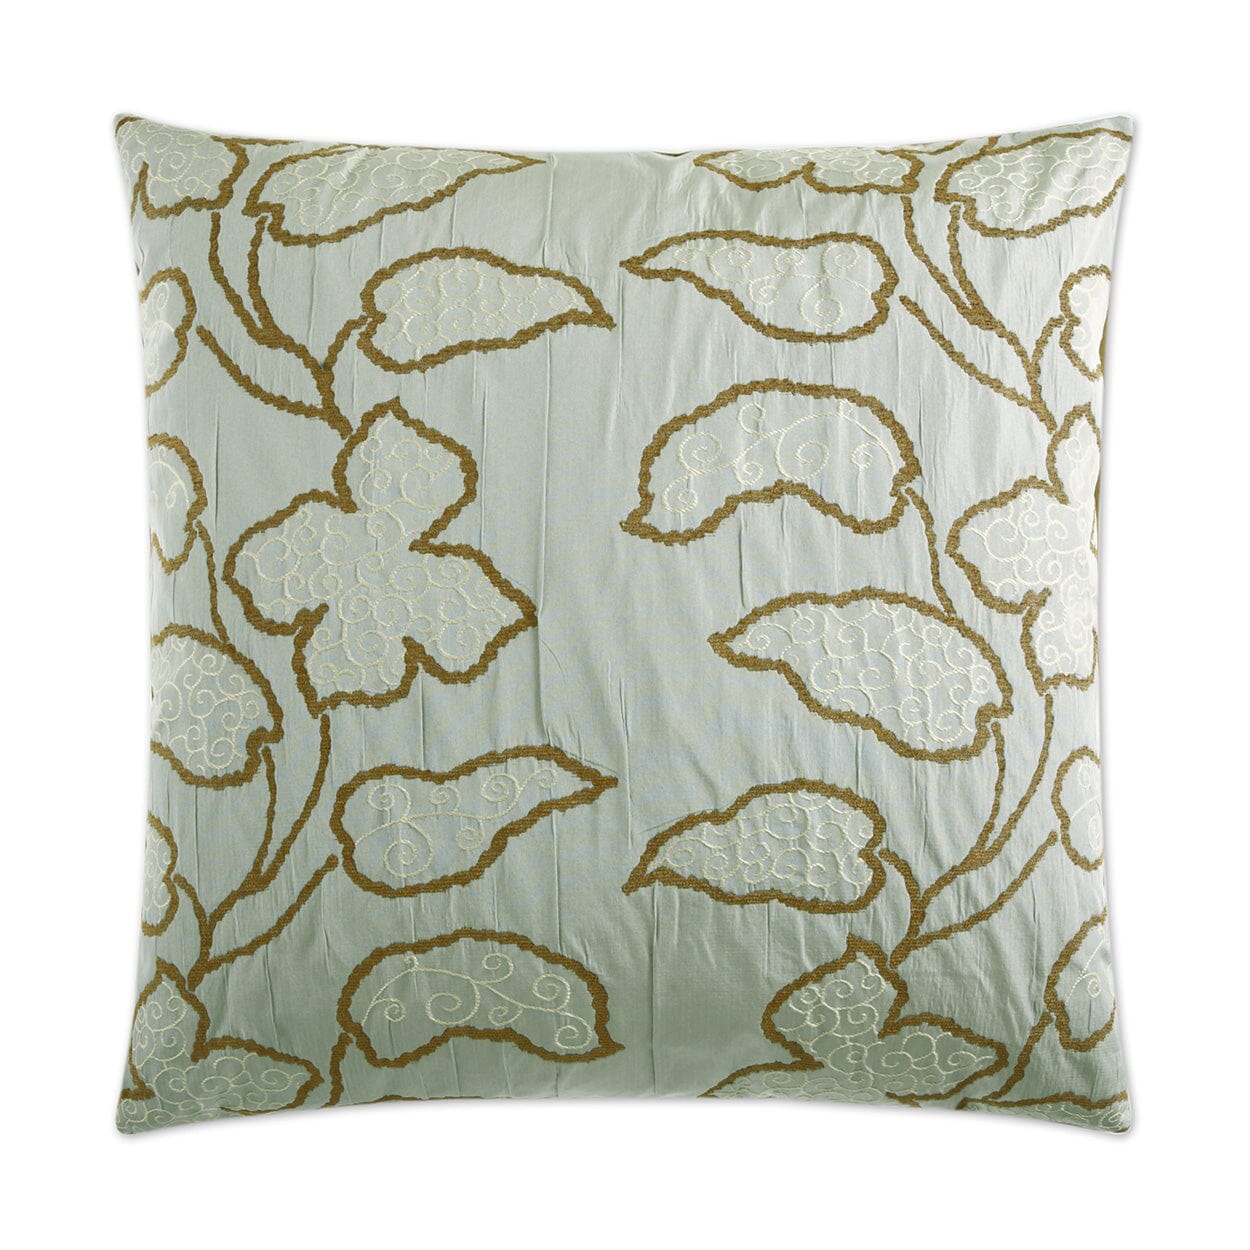 D.V. Kap Lyric Decorative Throw Pillow | Aqua Pillows D.V Kap Home